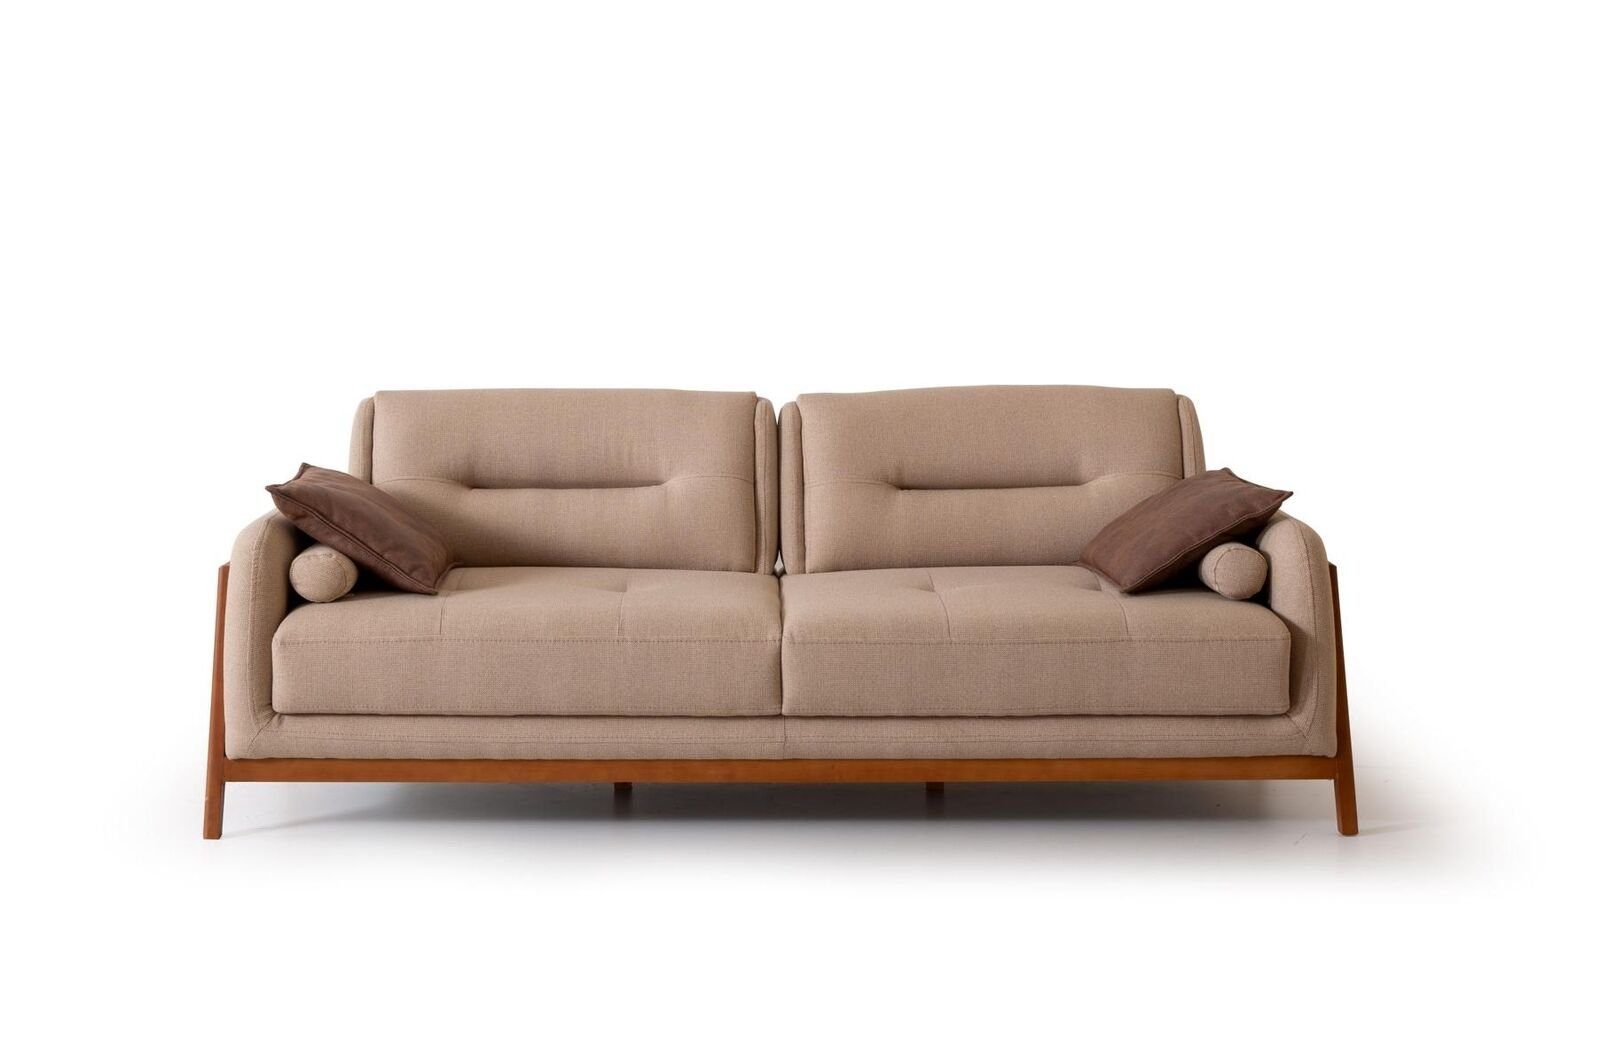 JVmoebel 3-Sitzer Designer Sofa 3 Sitzer Luxus Polster Braun Couch Wohnzimmer Möbel, 1 Teile, Made in Europa